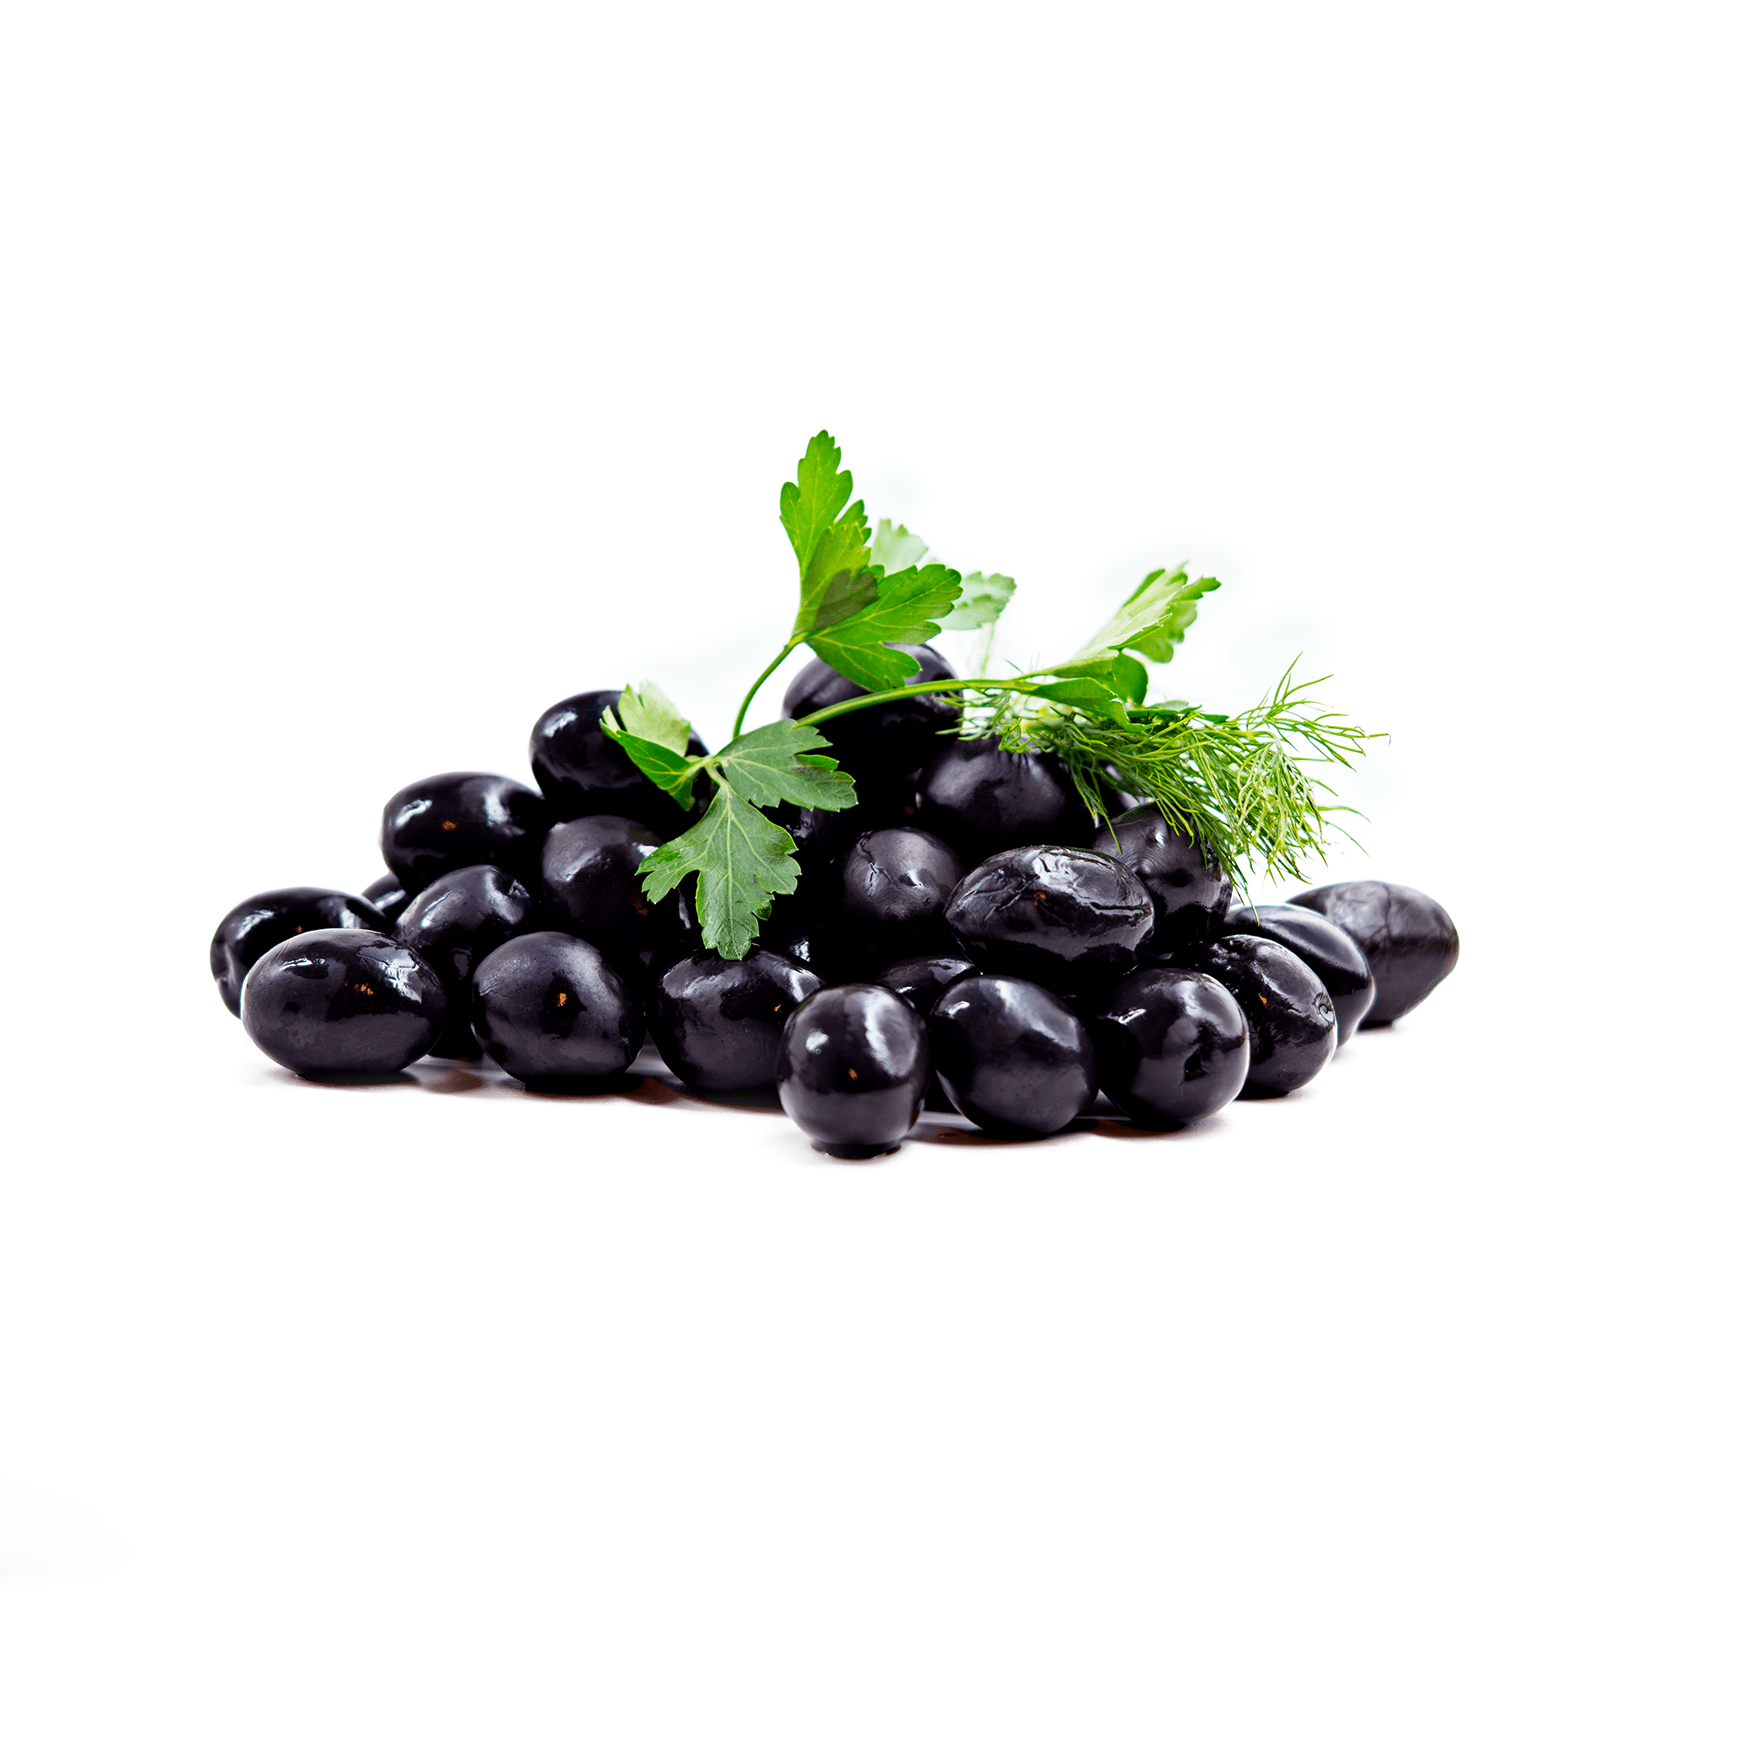 Whole Black Olives